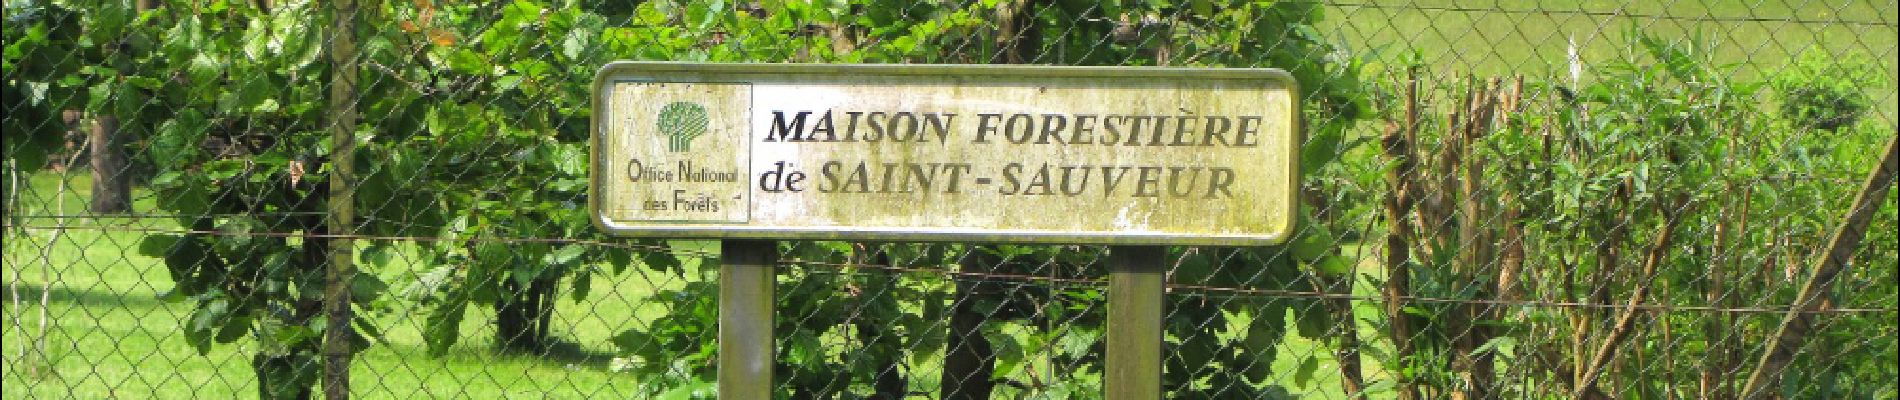 Point of interest Saint-Sauveur - Point 21 - Photo